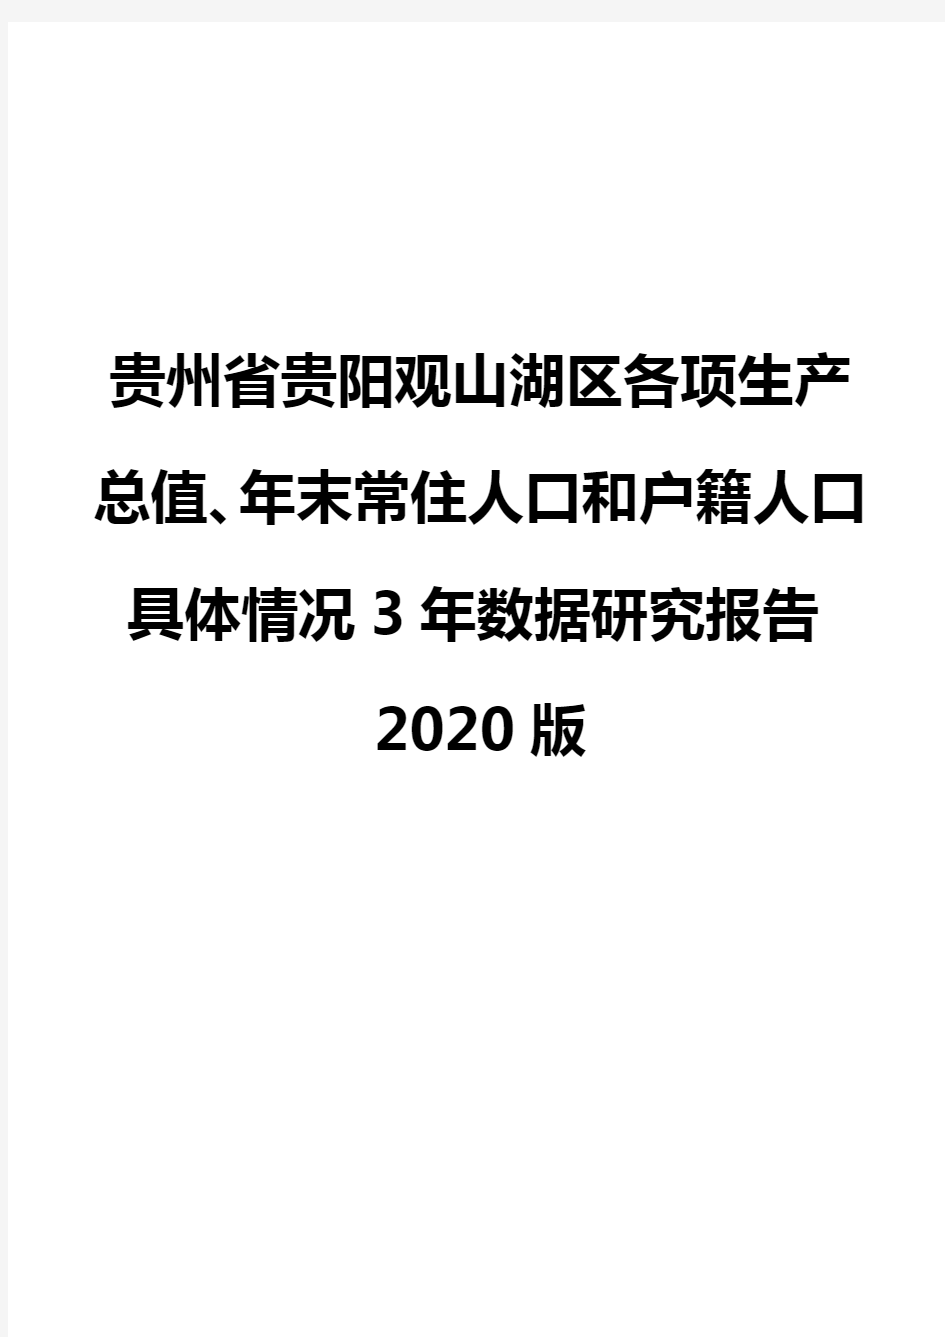 贵州省贵阳观山湖区各项生产总值、年末常住人口和户籍人口具体情况3年数据研究报告2020版